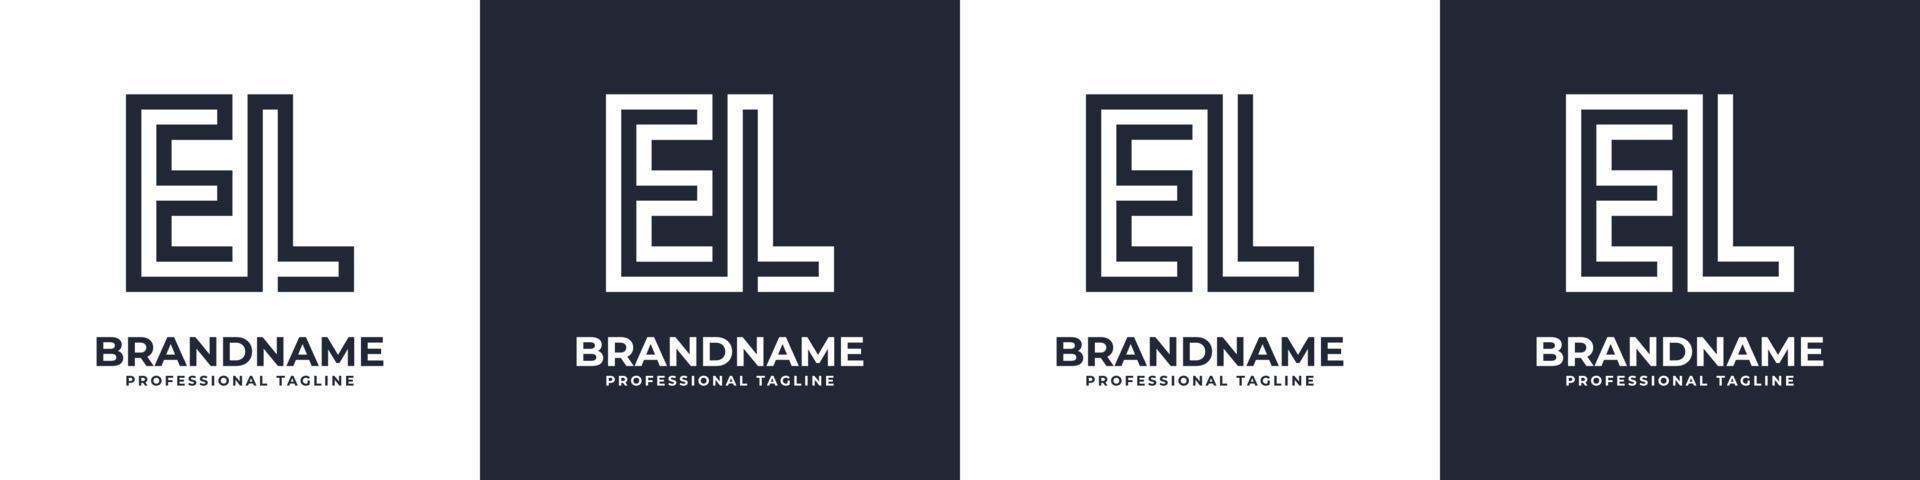 semplice EL monogramma logo, adatto per qualunque attività commerciale con EL o Le iniziale. vettore